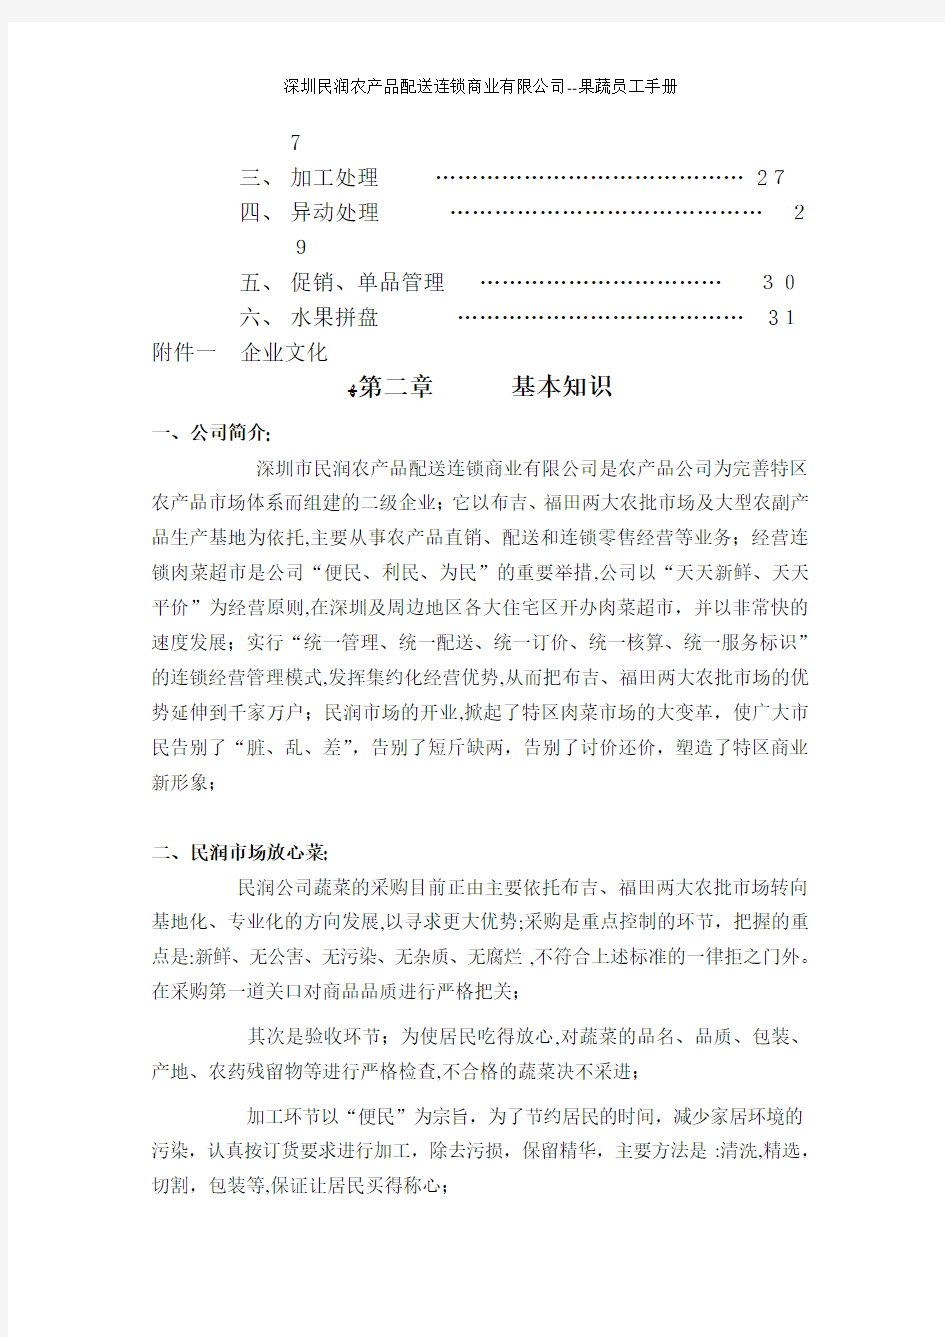 深圳民润农产品配送连锁商业有限公司--果蔬员工手册